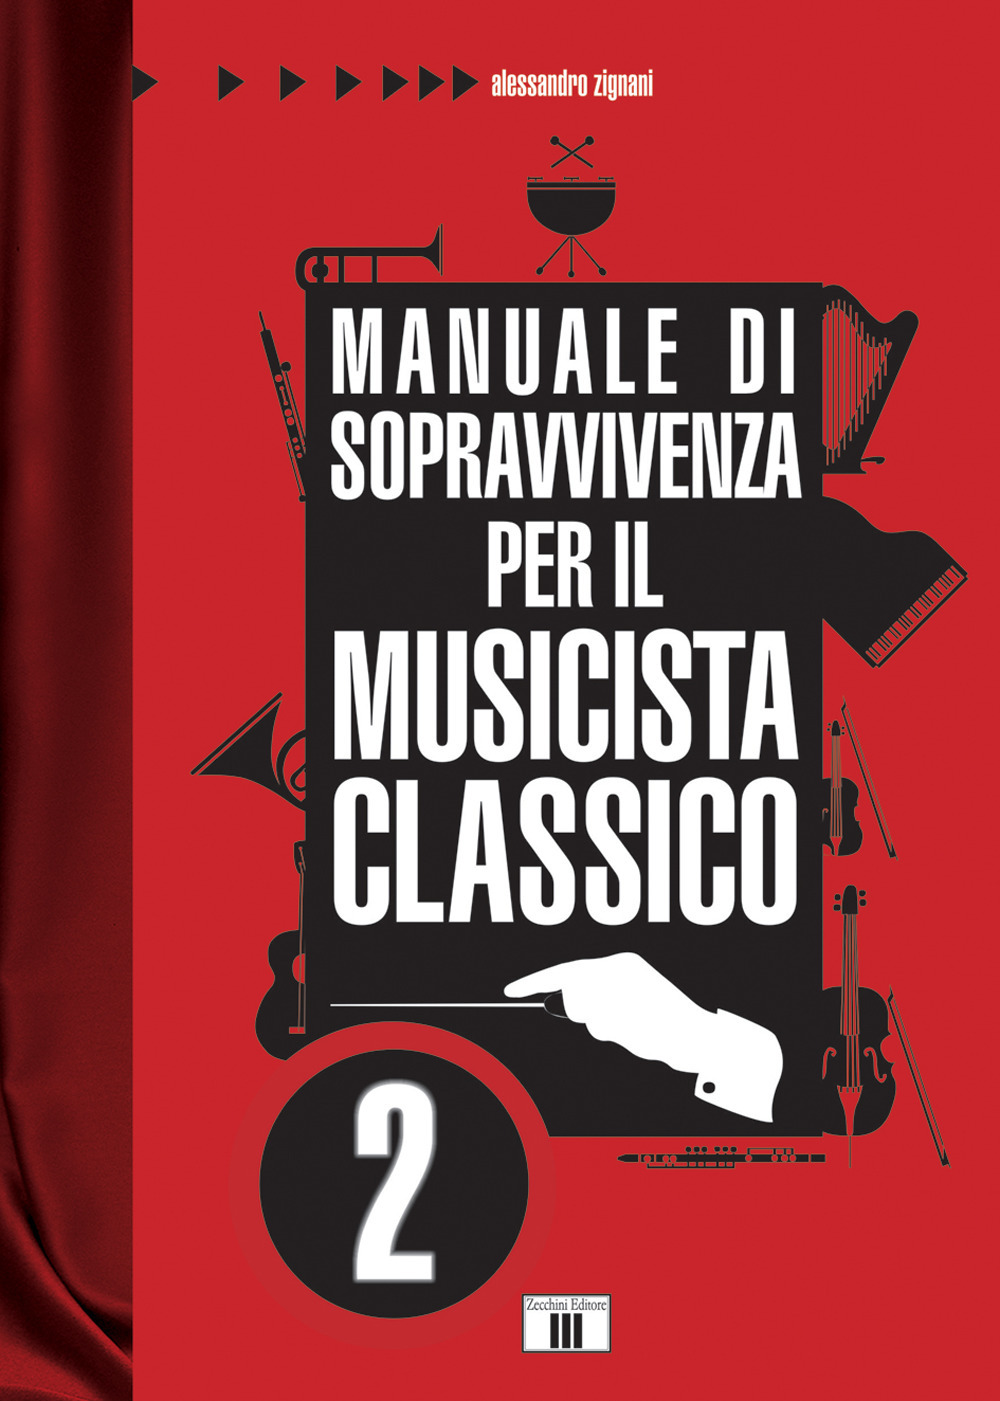 Libri Alessandro Zignani - Manuale Di Sopravvivenza Per Il Musicista Classico Vol 02 NUOVO SIGILLATO, EDIZIONE DEL 18/01/2019 SUBITO DISPONIBILE